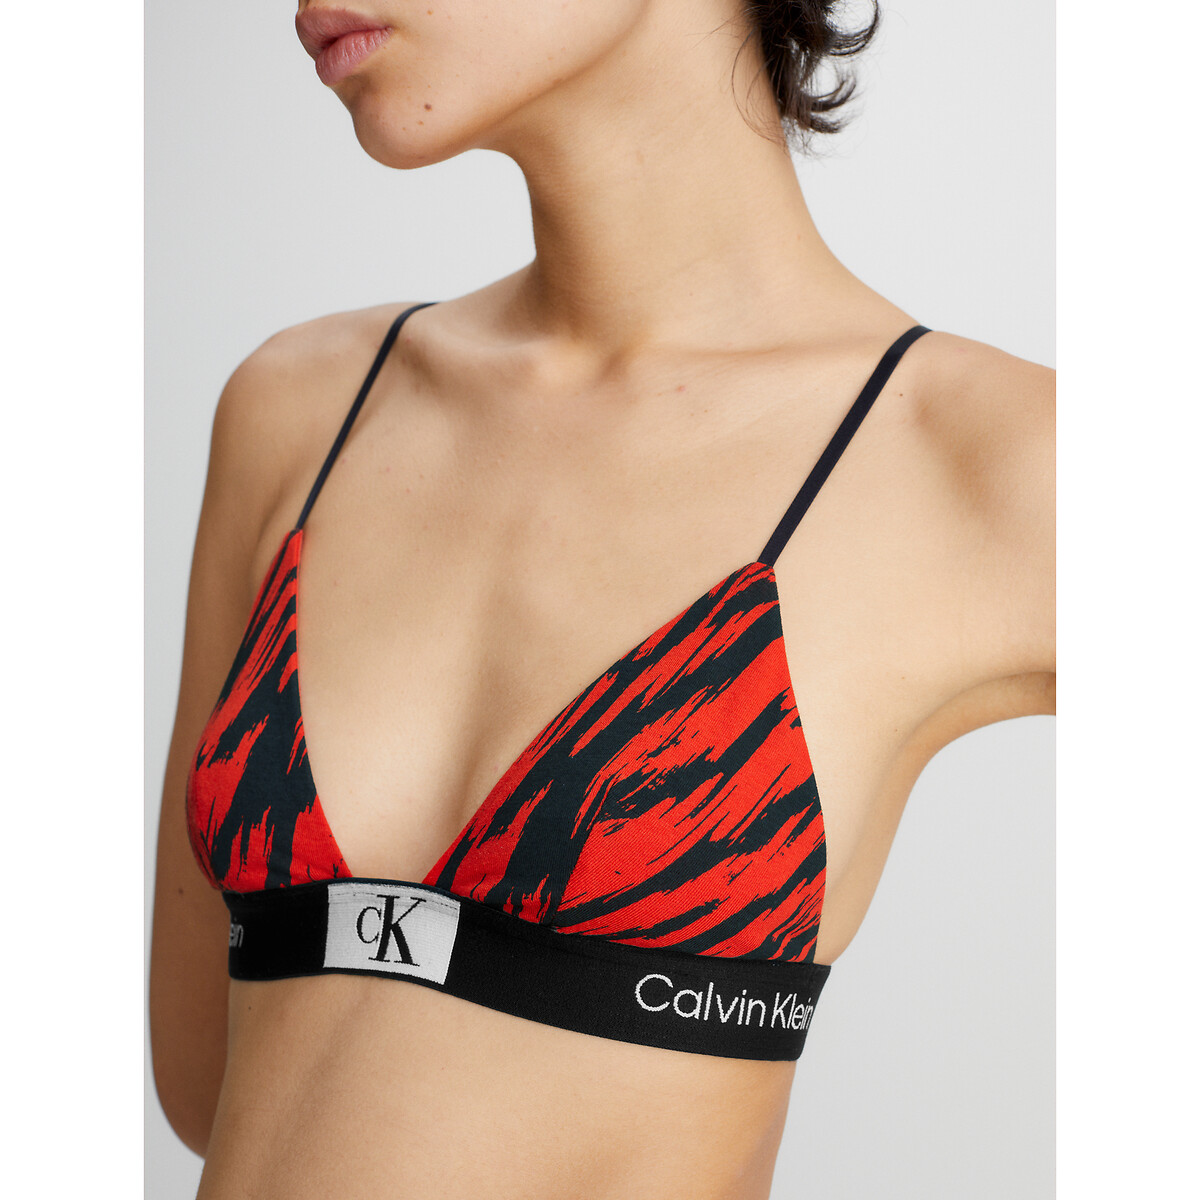 Zwaaien Adolescent Competitief Triangel-bh in katoen bedrukt rood/zwart Calvin Klein Underwear | La Redoute